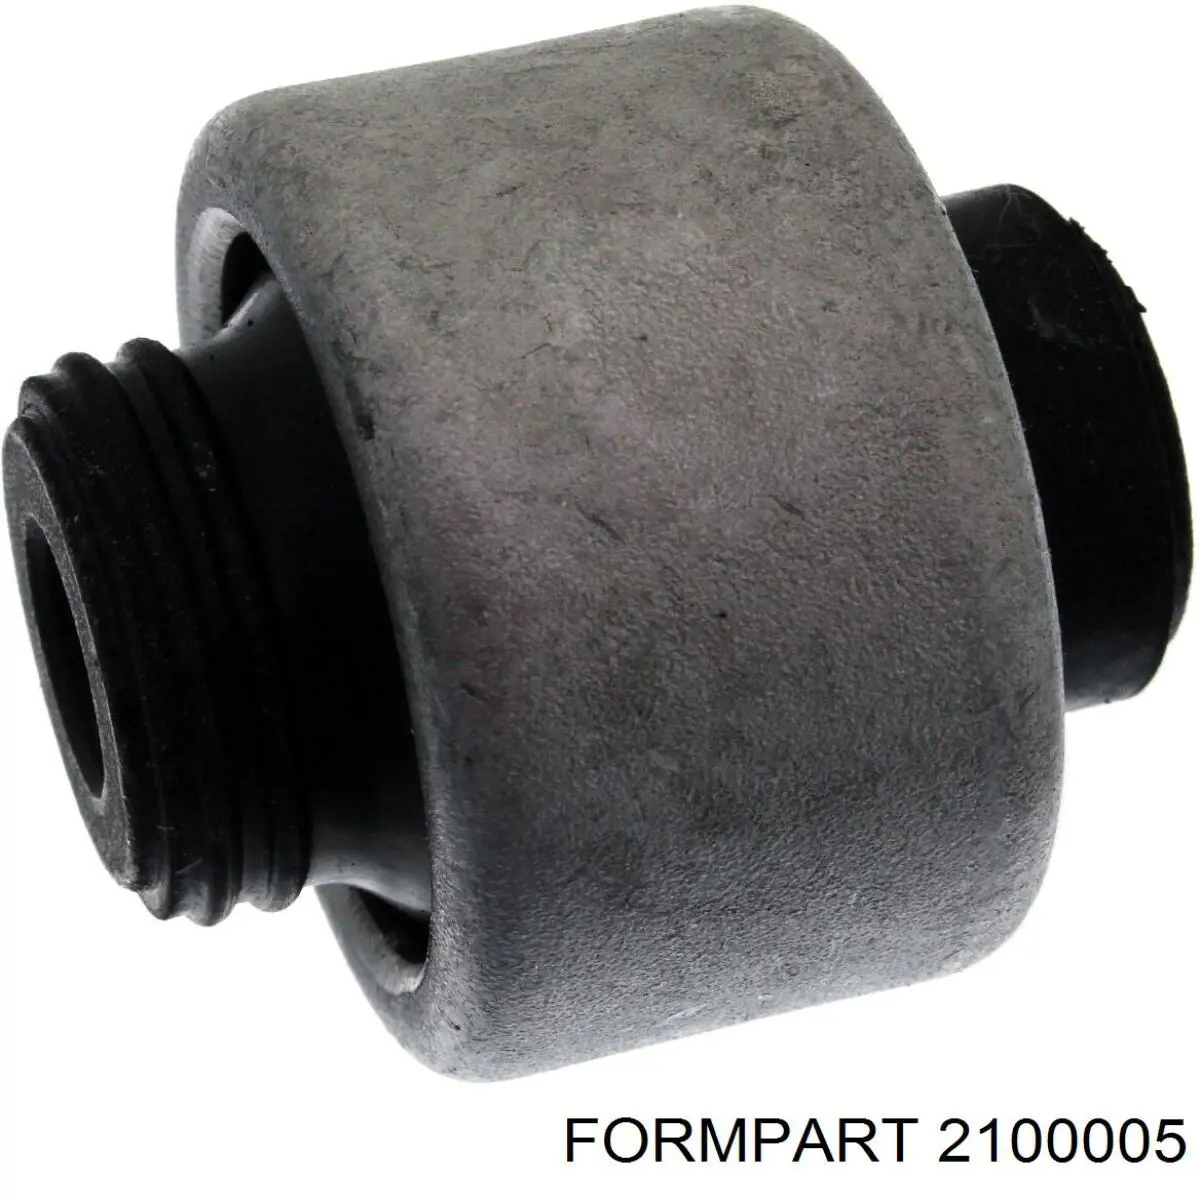 2100005 Formpart/Otoform silentblock de suspensión delantero inferior